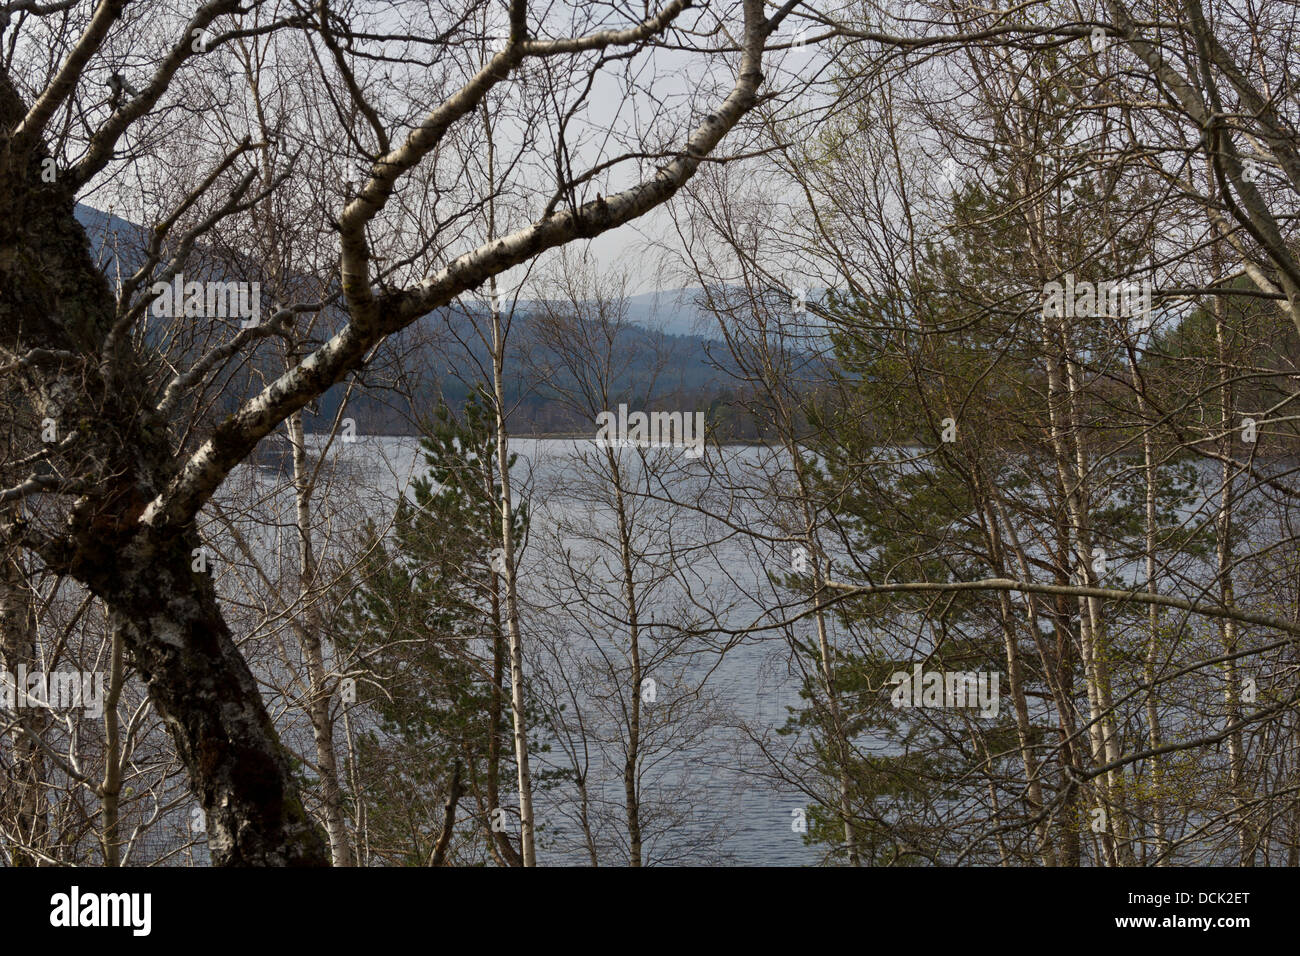 Vue d'un loch dans les Highlands écossais, visible à travers les branches d'arbres, avec des collines en arrière-plan. Le lac est très beau Banque D'Images